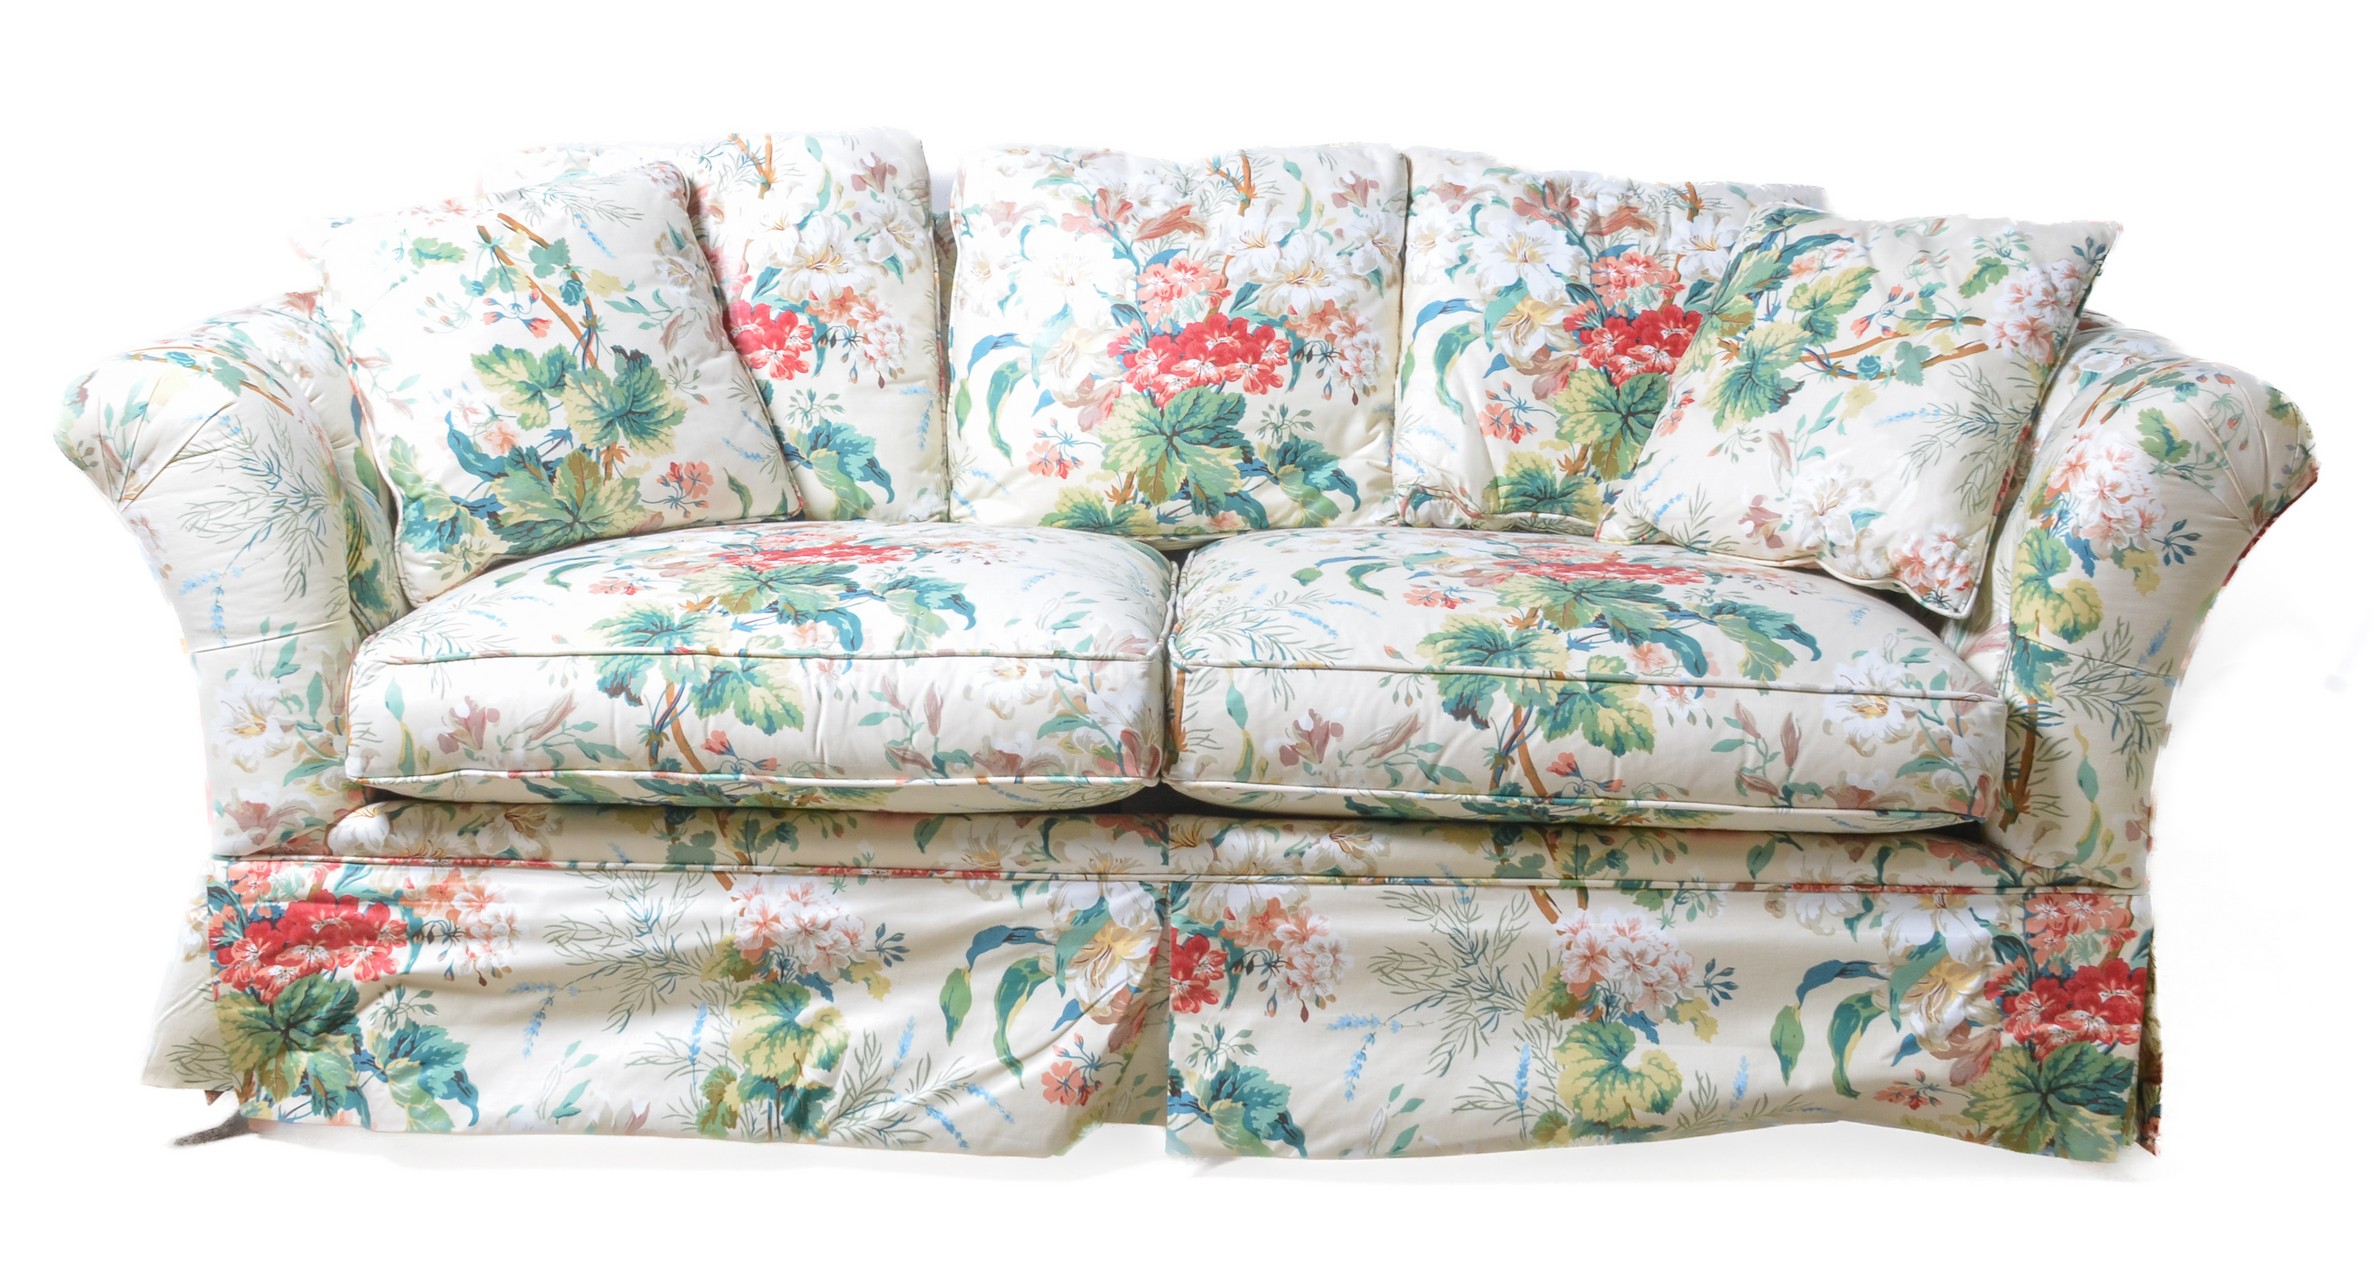 Kindel tufted upholstered sofa, floral